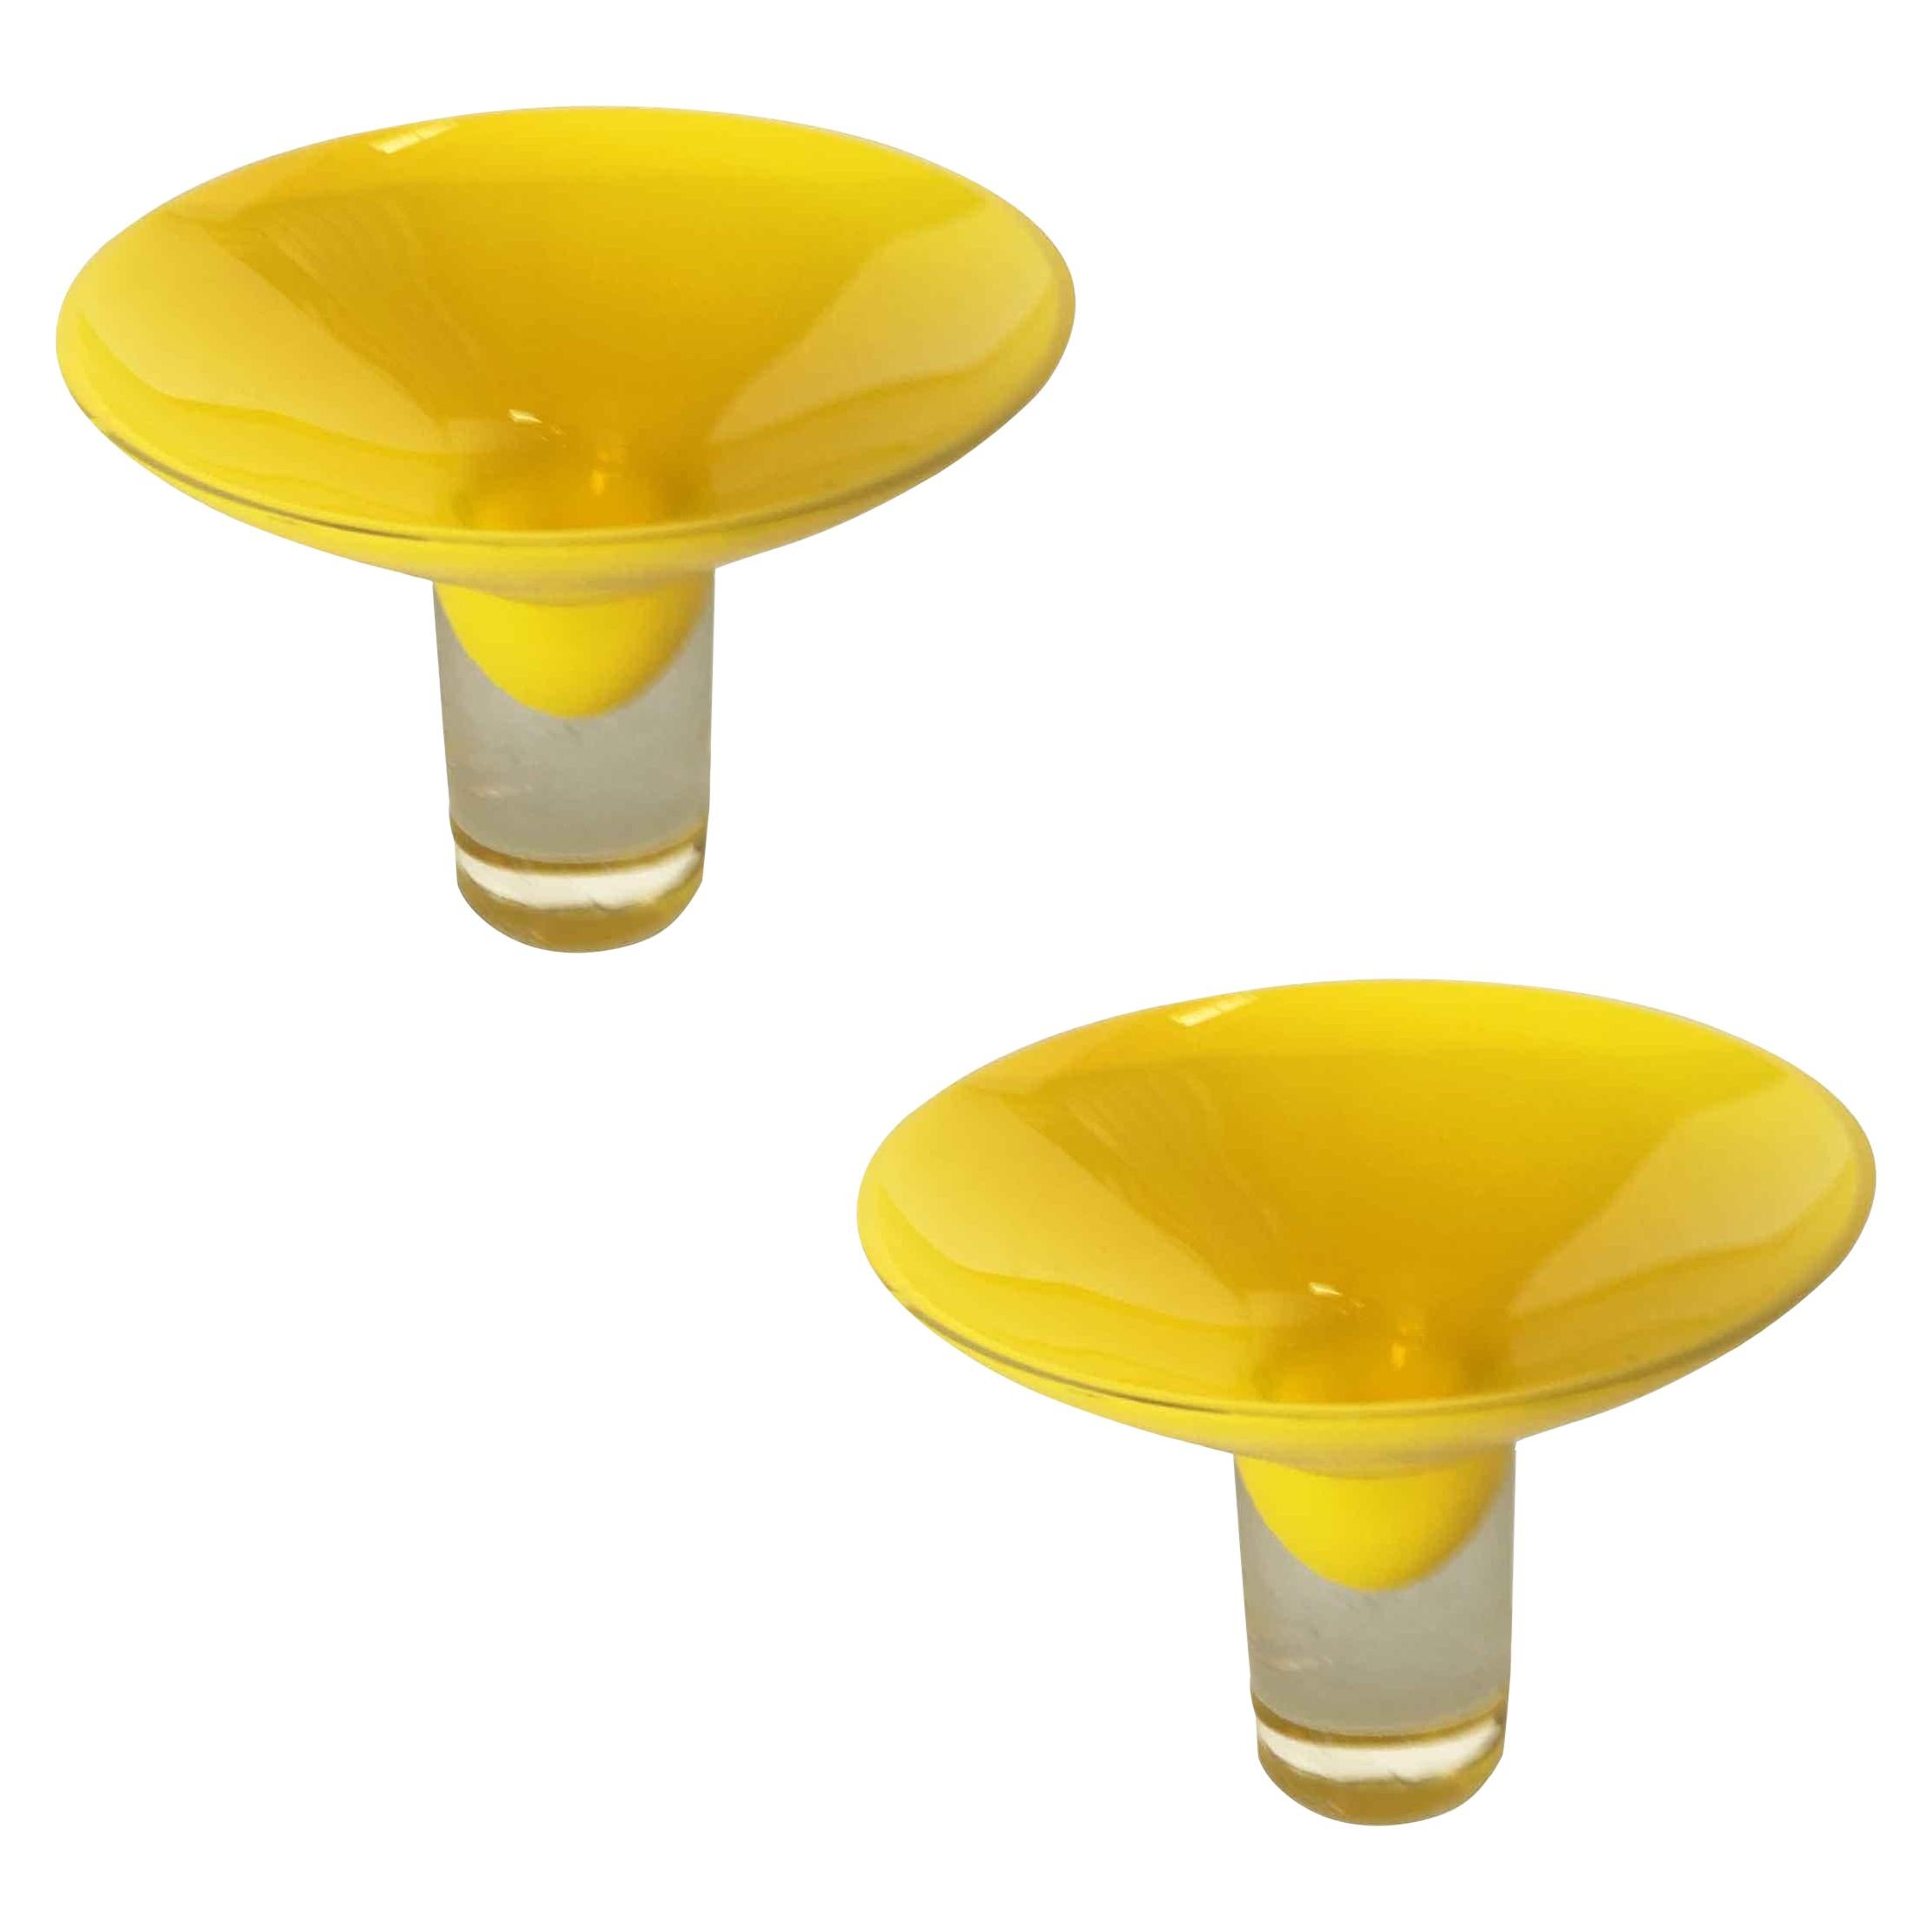 Yellow Murano Glass Dish Candlestick Holder, Midcentury